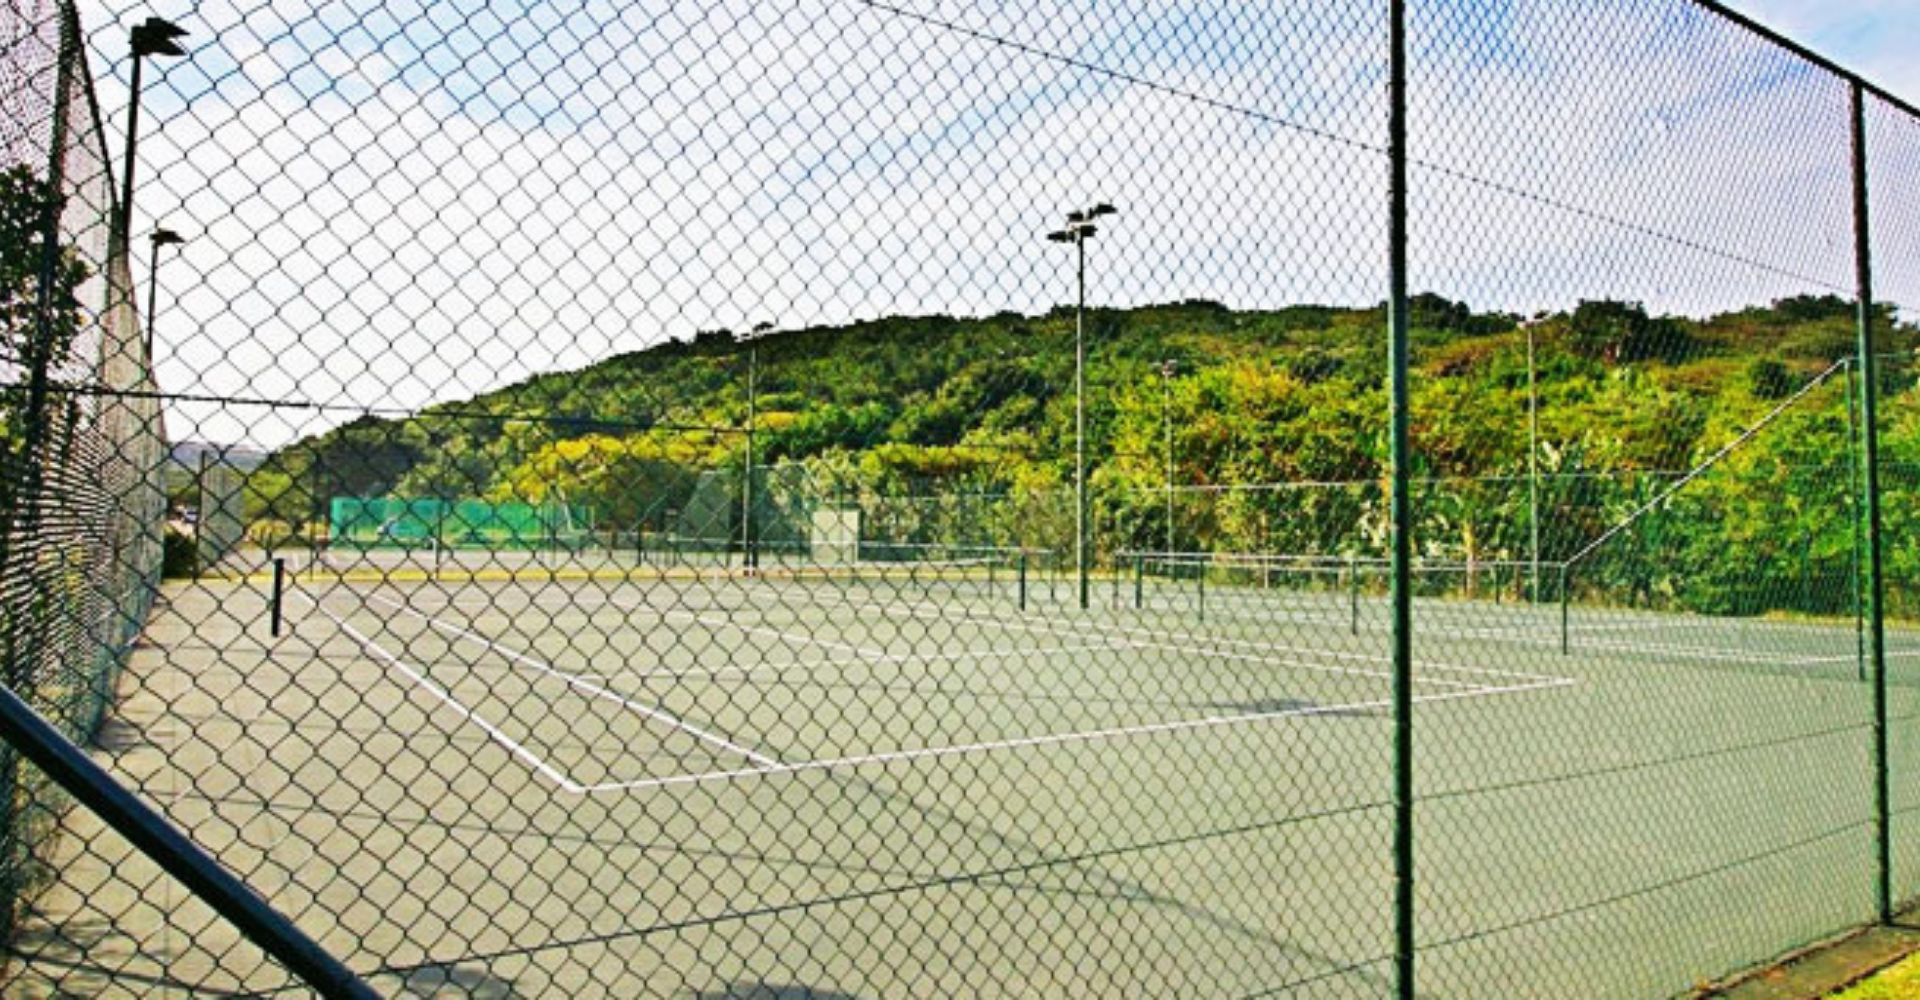 Tennis at Zimbali